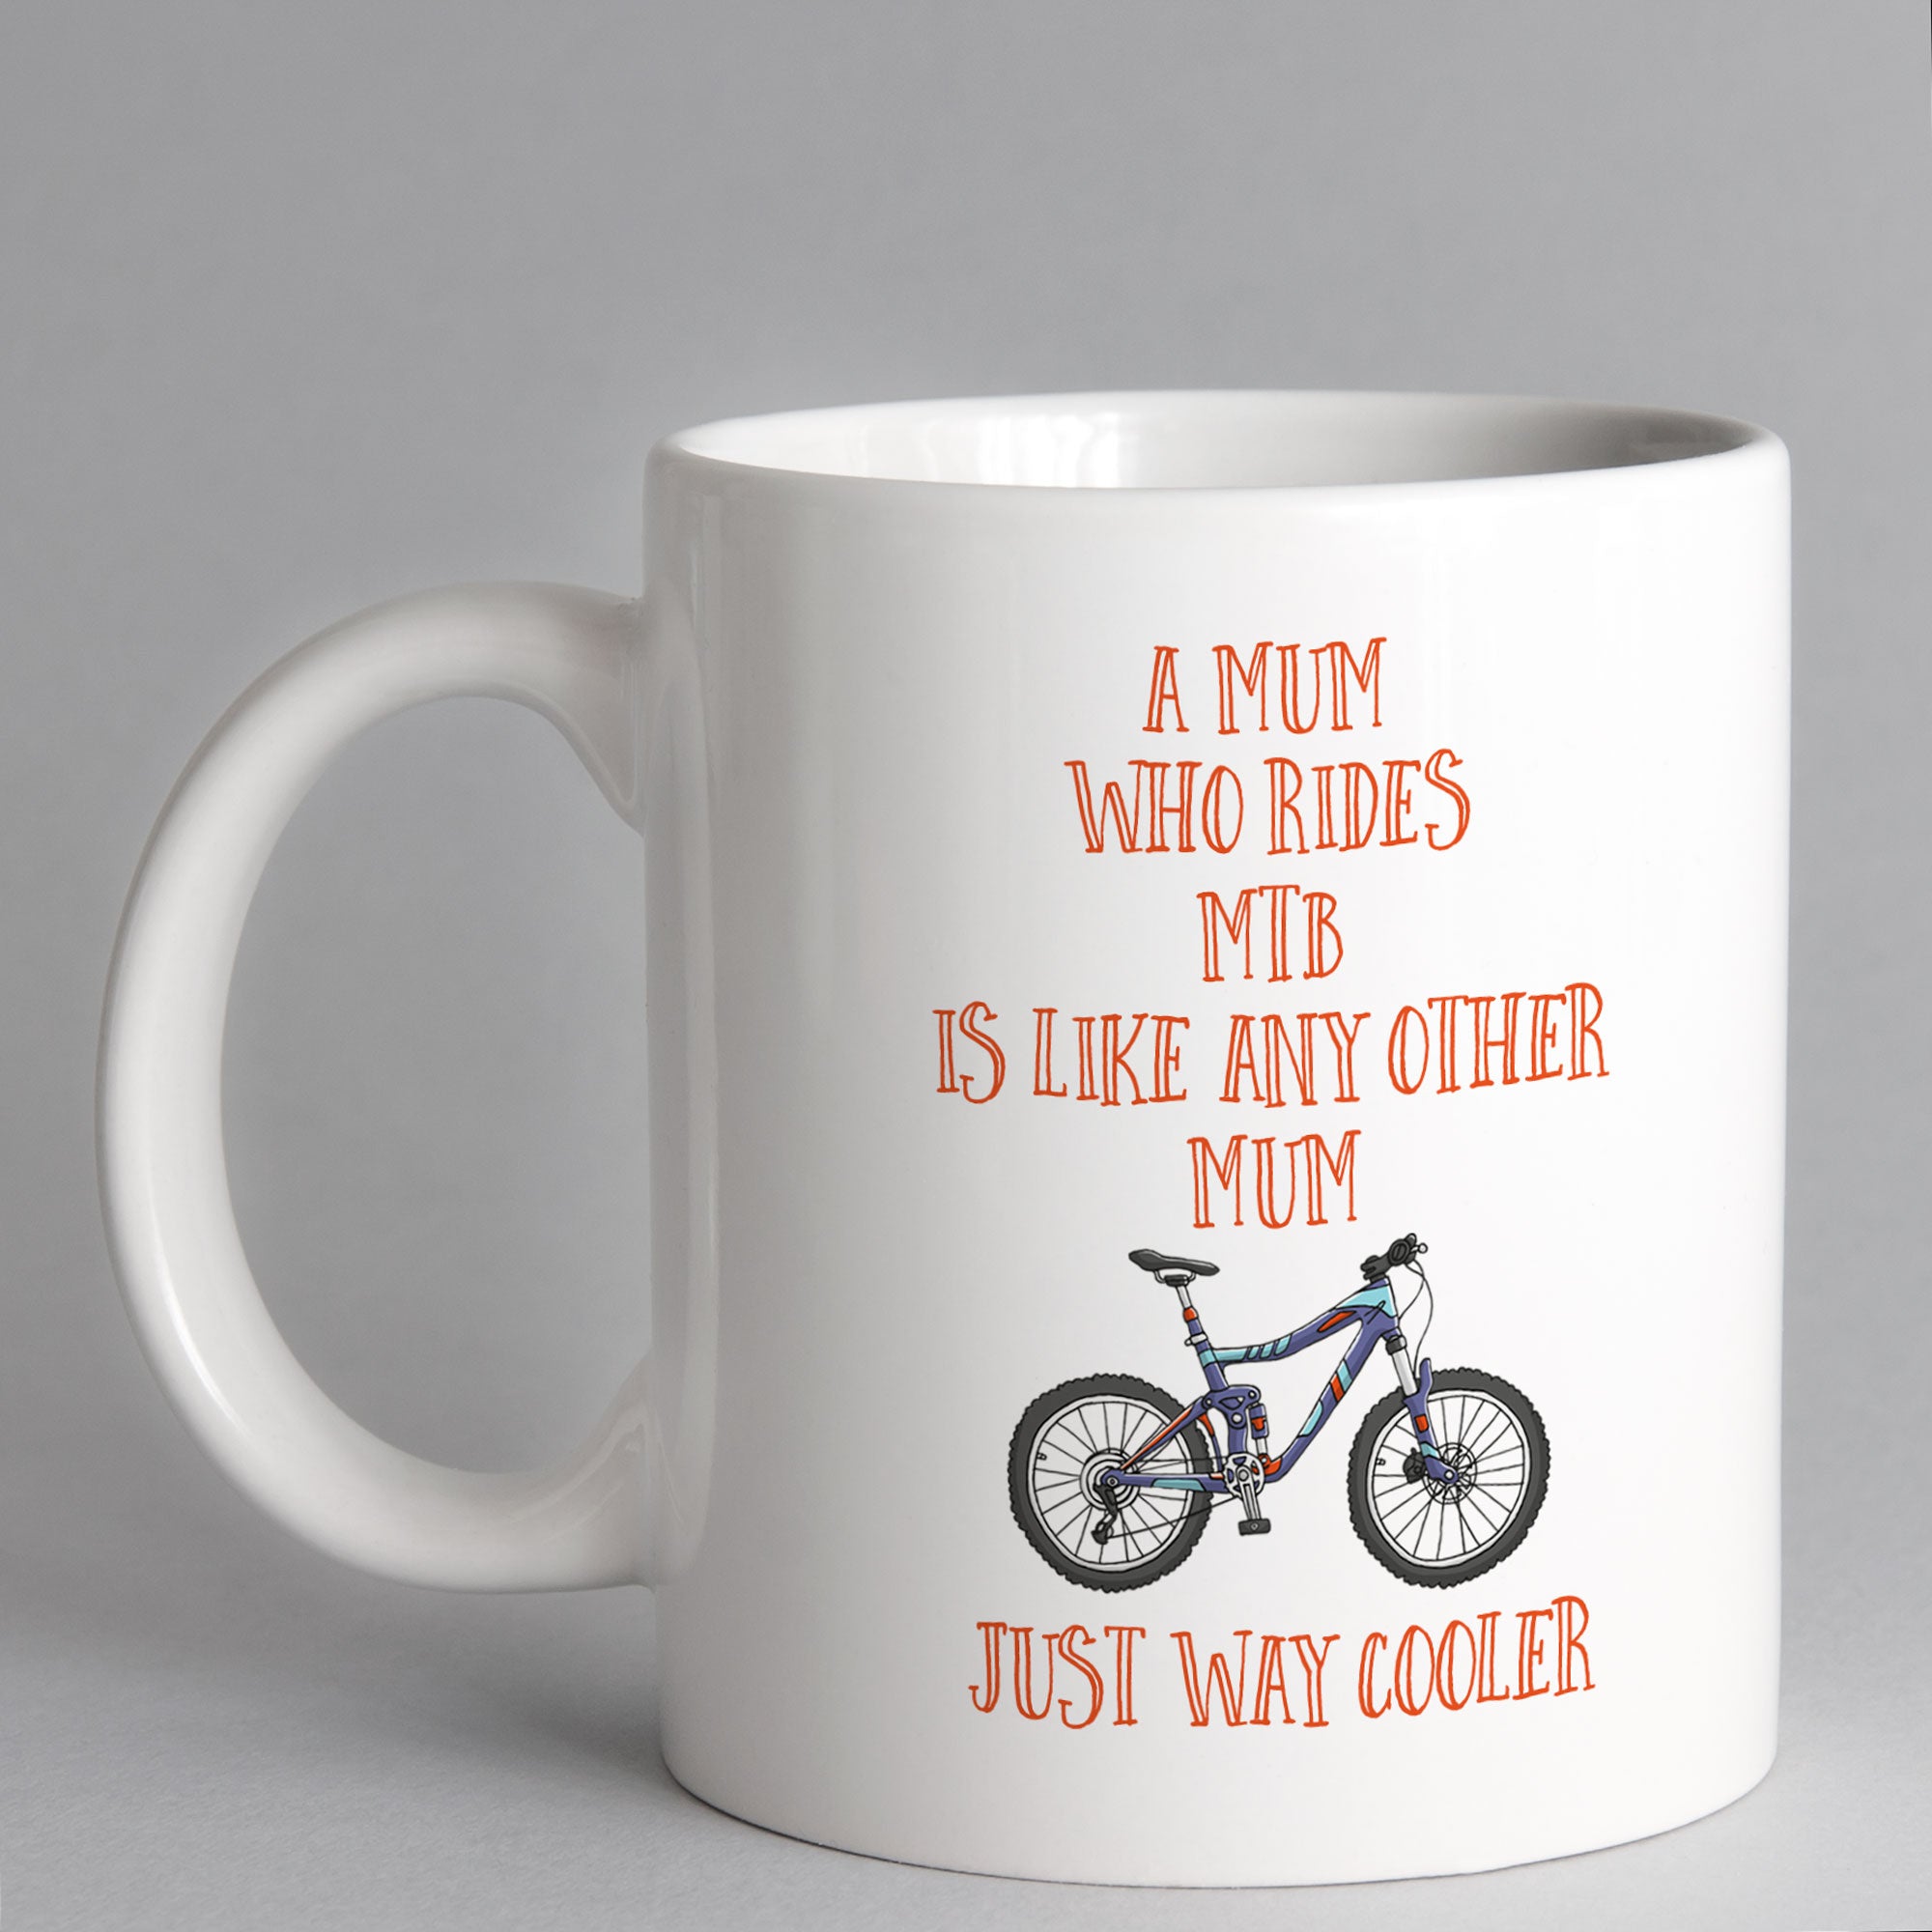 A Mum Who Rides MTB Is Way Cooler Mug